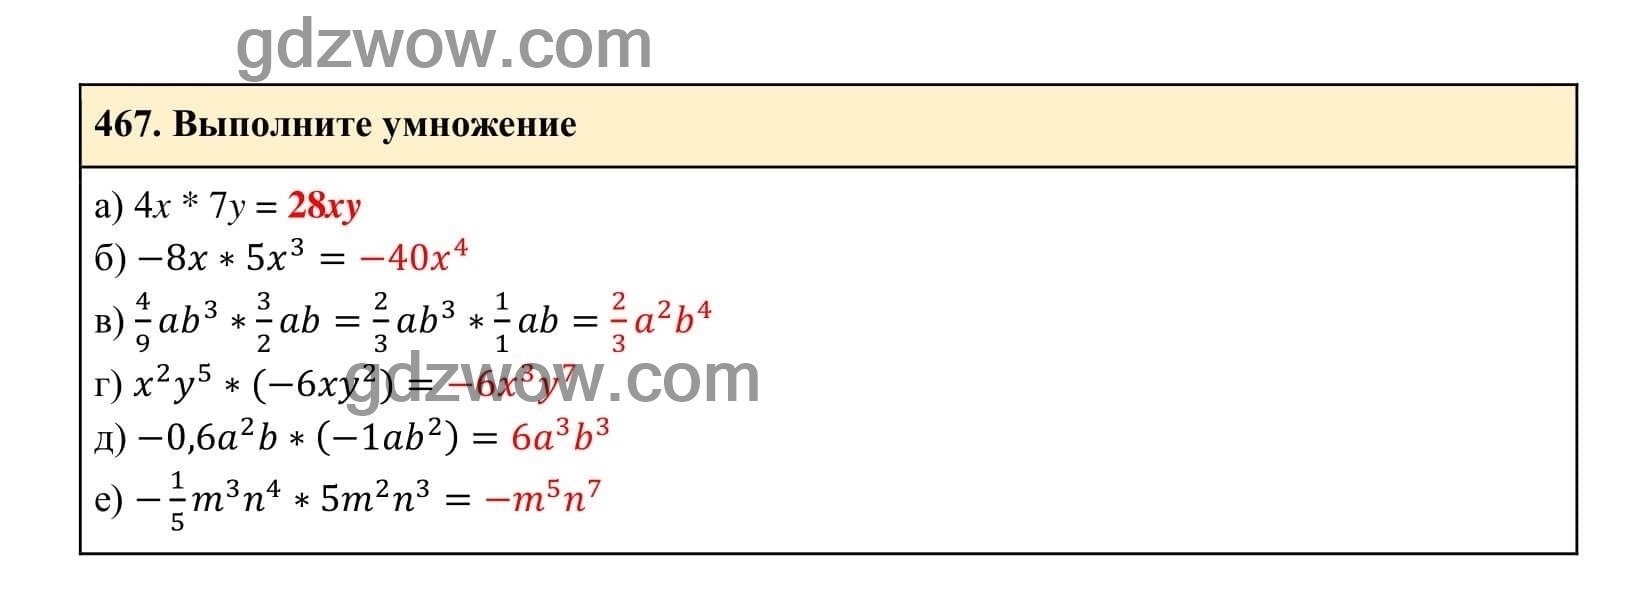 Упражнение 467 - ГДЗ по Алгебре 7 класс Учебник Макарычев (решебник) - GDZwow